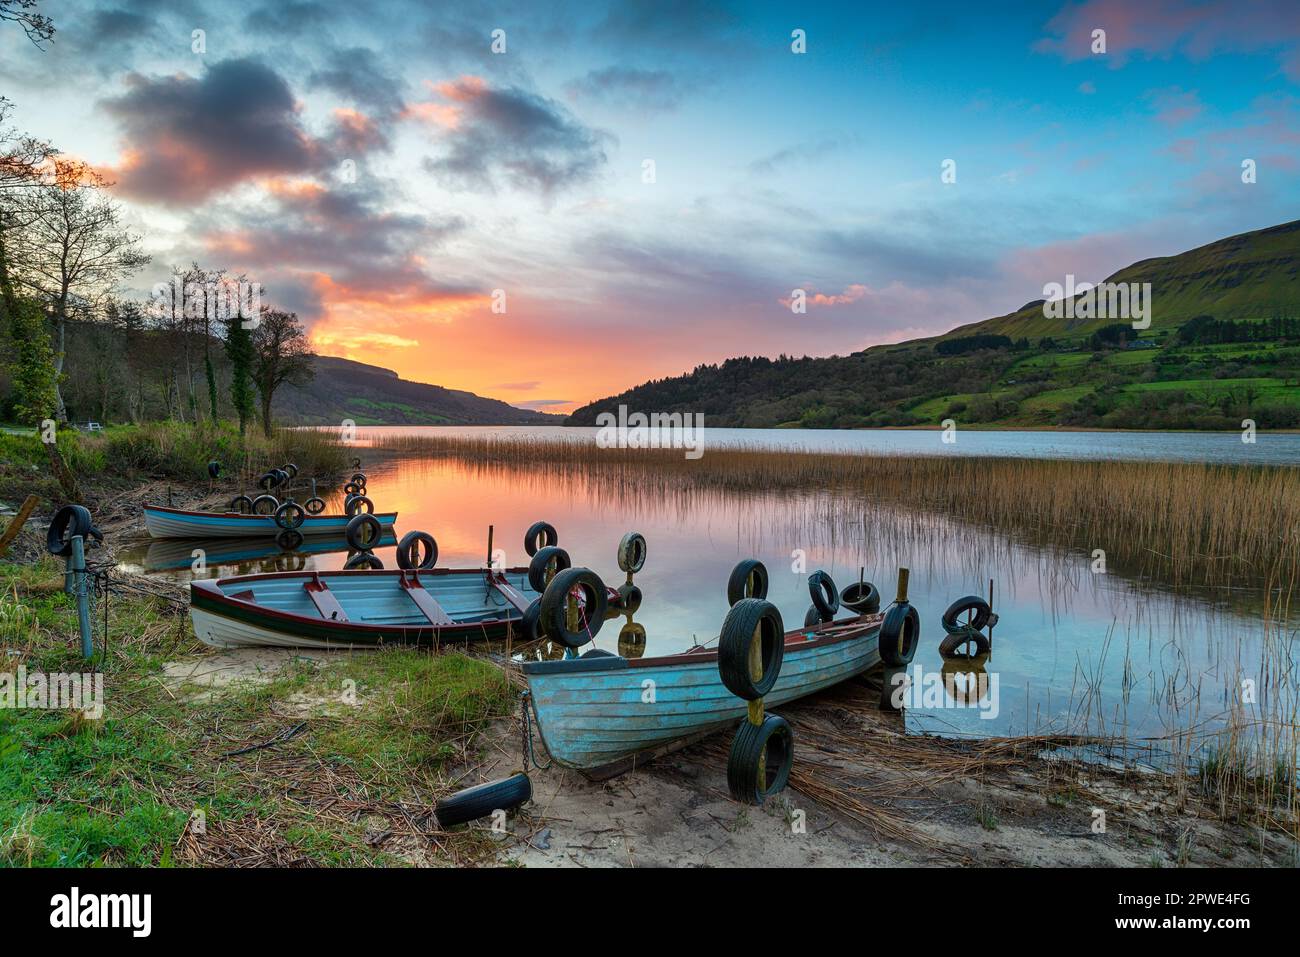 Magnifique lever de soleil sur des bateaux à rames à Glencar Lough près de Sligo en Irlande Banque D'Images